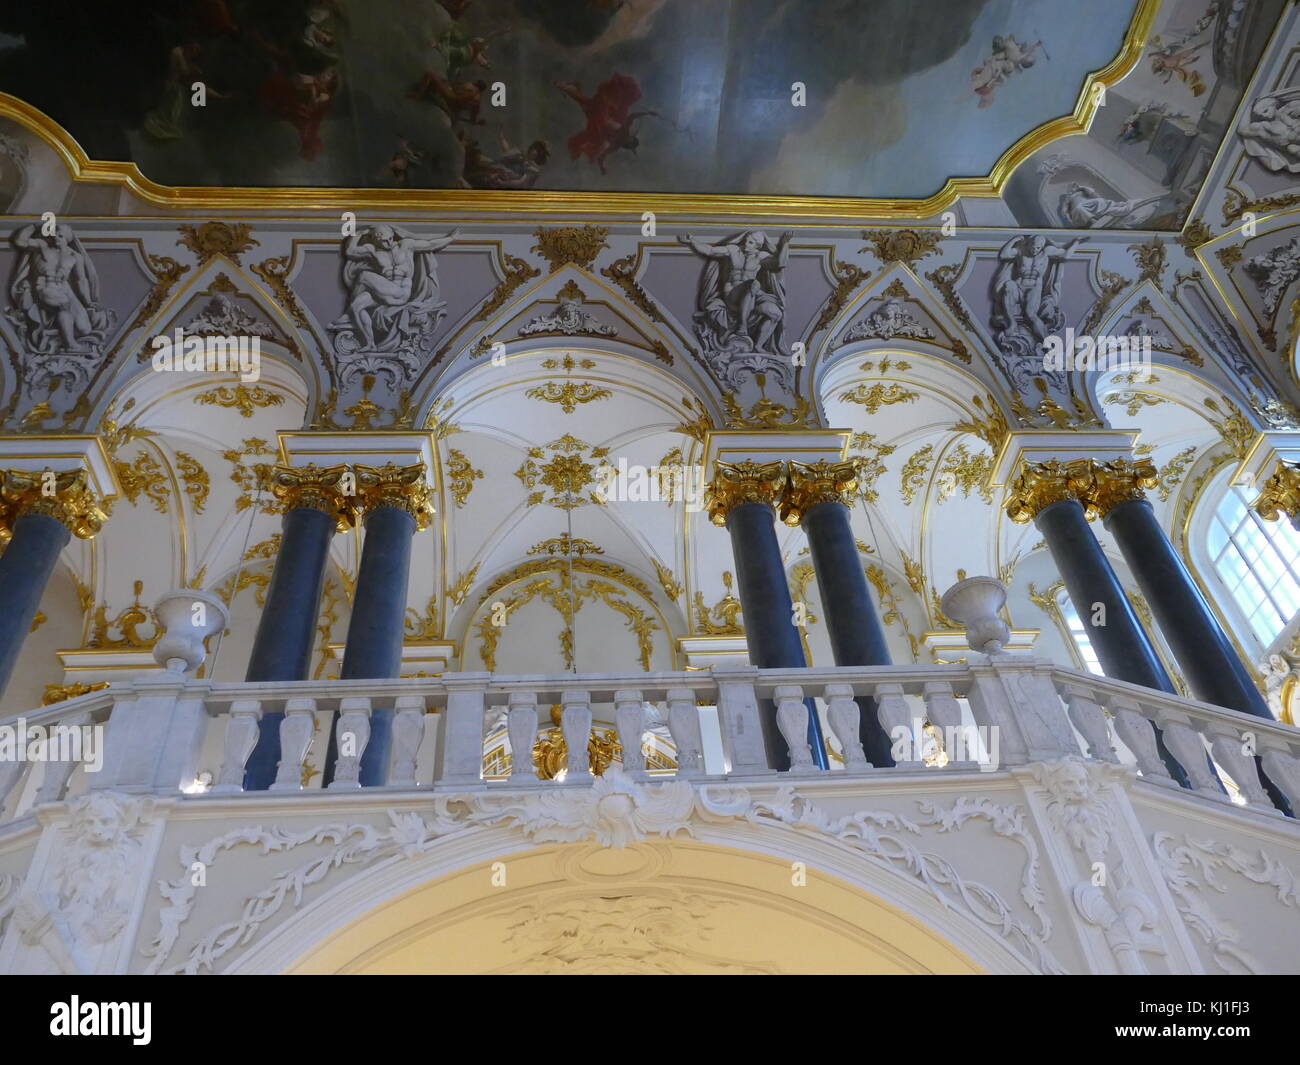 Ornamentación y superficies doradas alrededor de la gran escalera del palacio de invierno, San Petersburgo, Rusia, que fue, desde 1732 hasta 1917, la residencia oficial de los monarcas rusos. Foto de stock